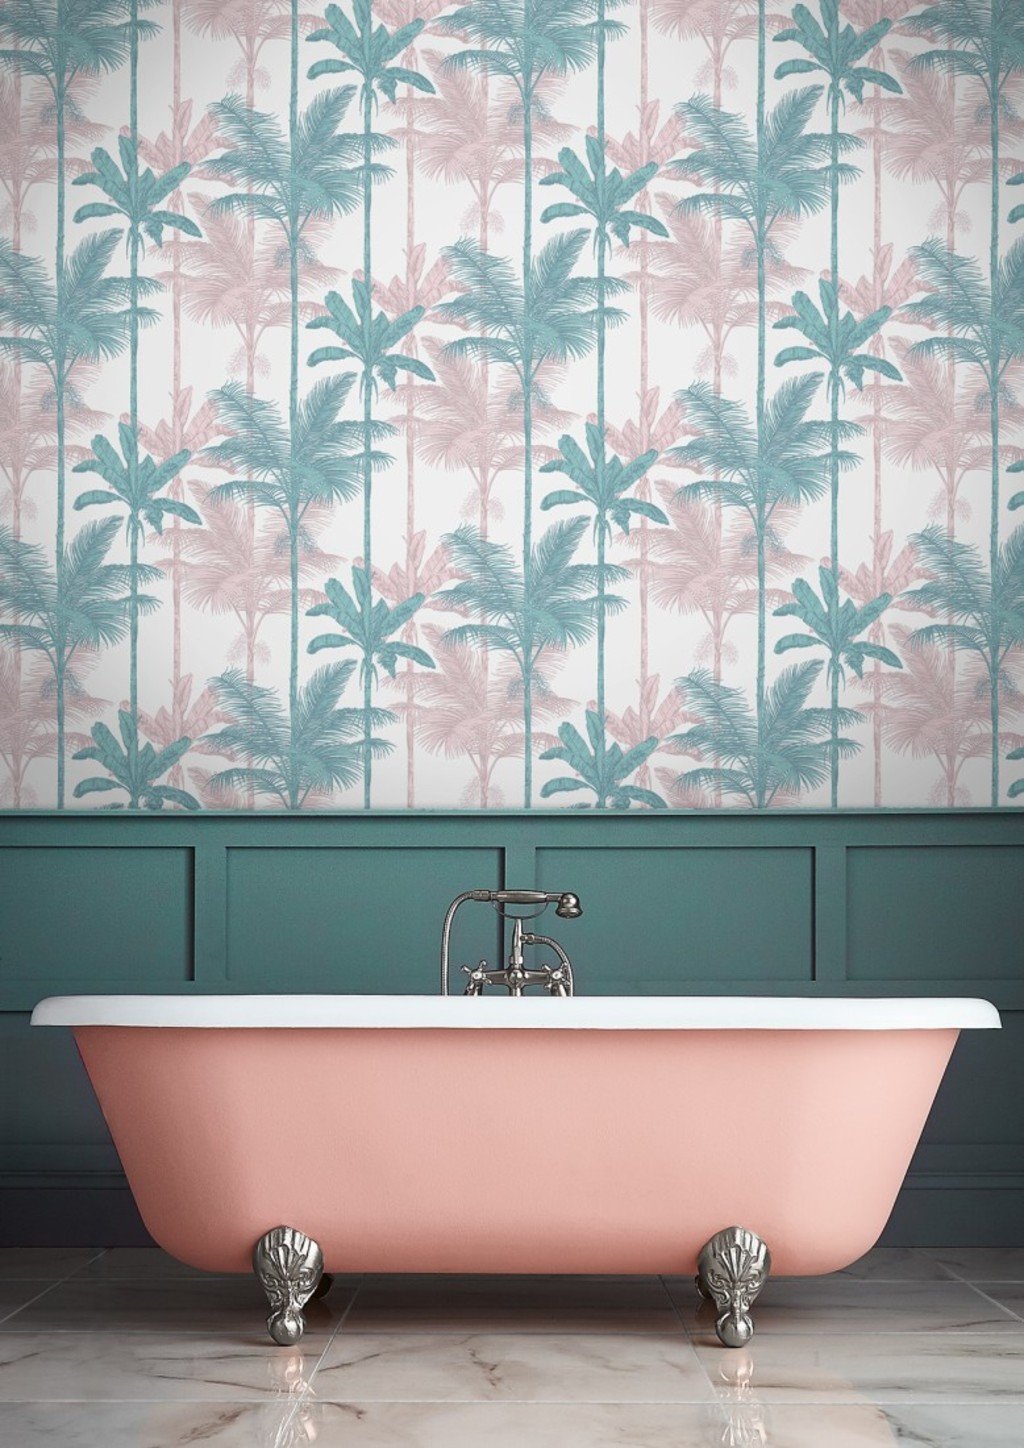 Romantic (bath)Room Wallpaper